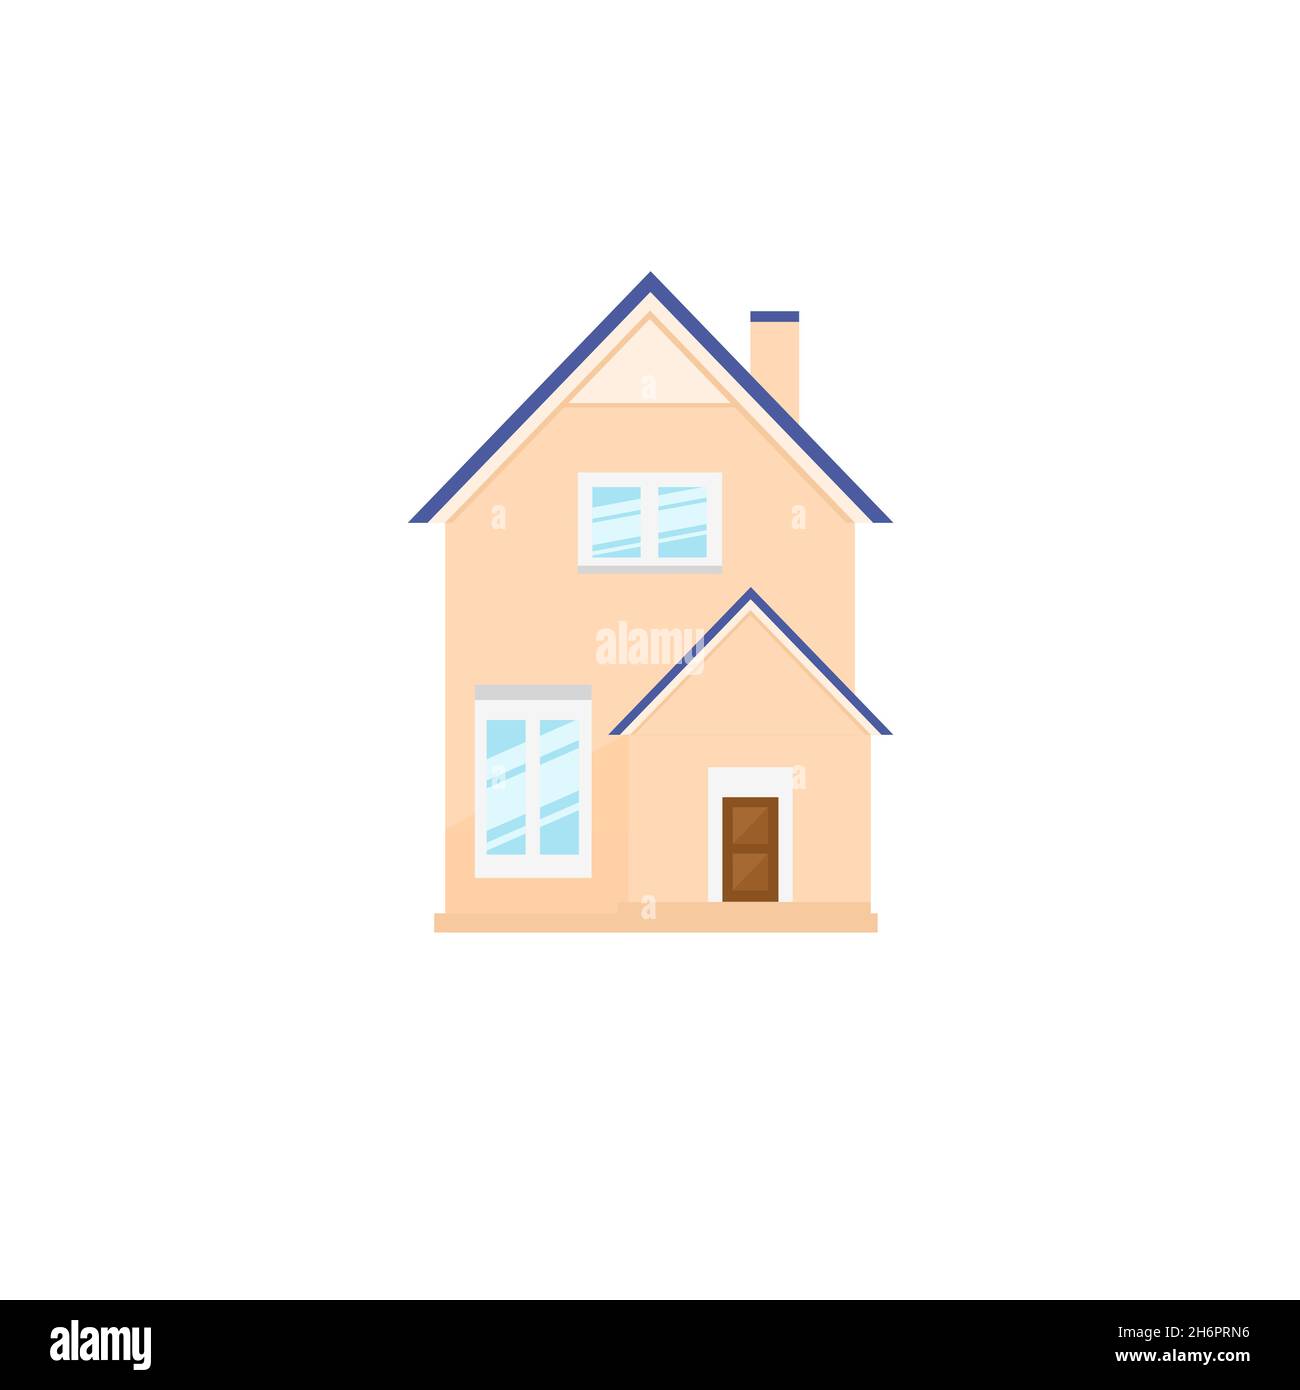 Vettore di una classica icona casa britannica a due piani in colori crema chiaro. Usalo per i tuoi siti immobiliari, pubblicità o infografica. Illustrazione Vettoriale